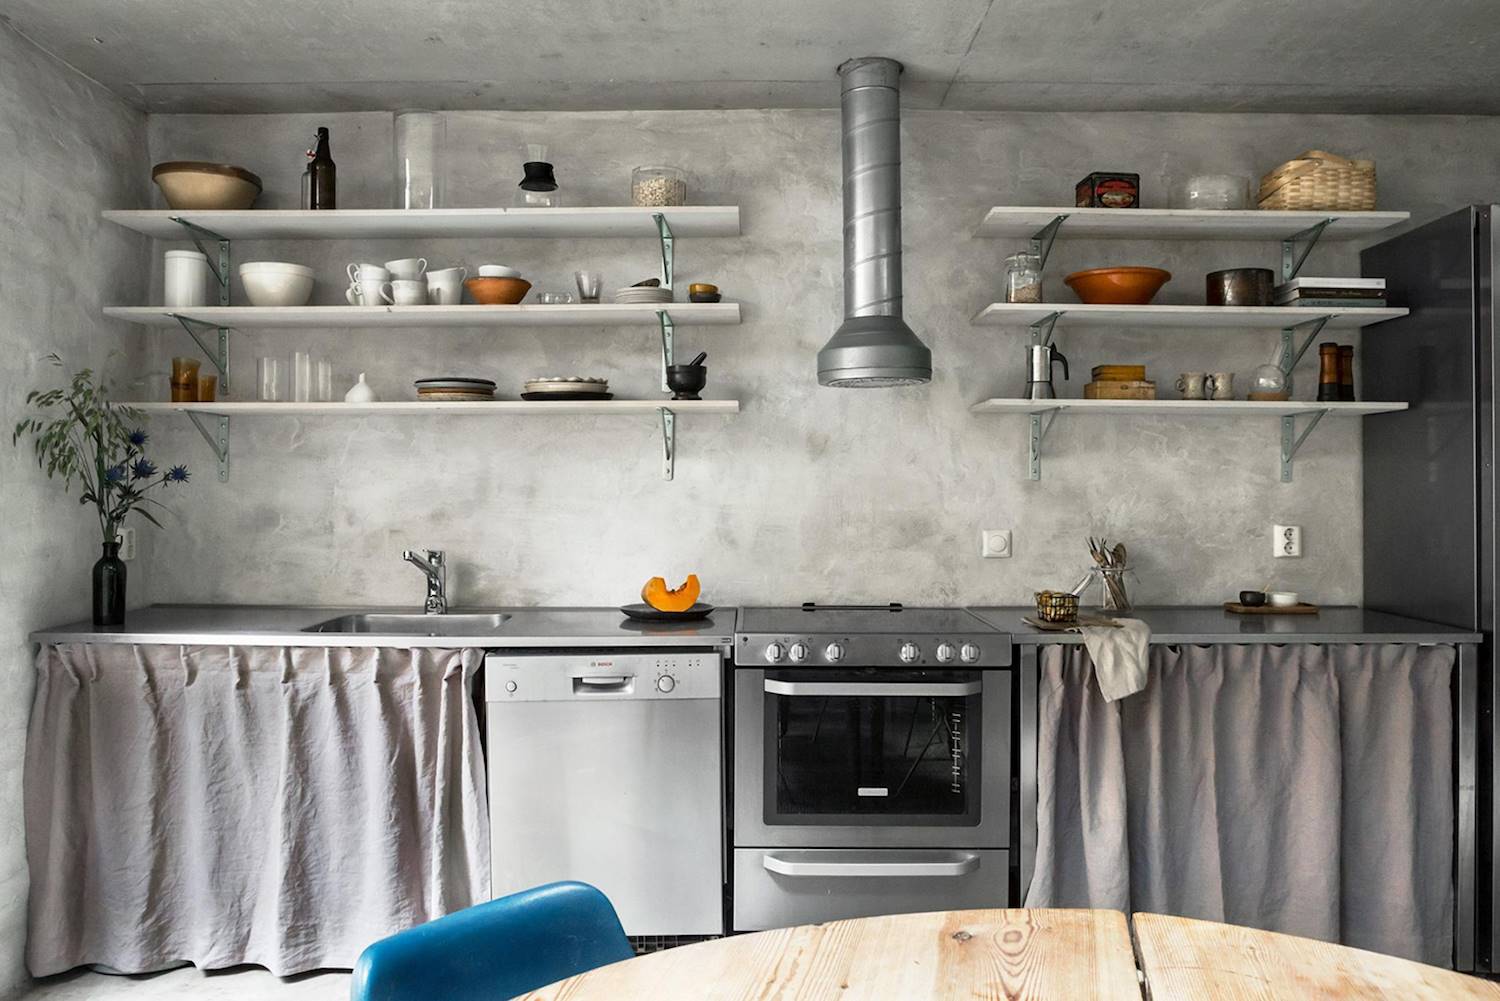 Por qué optar por persianas para muebles de cocina es una buena idea?